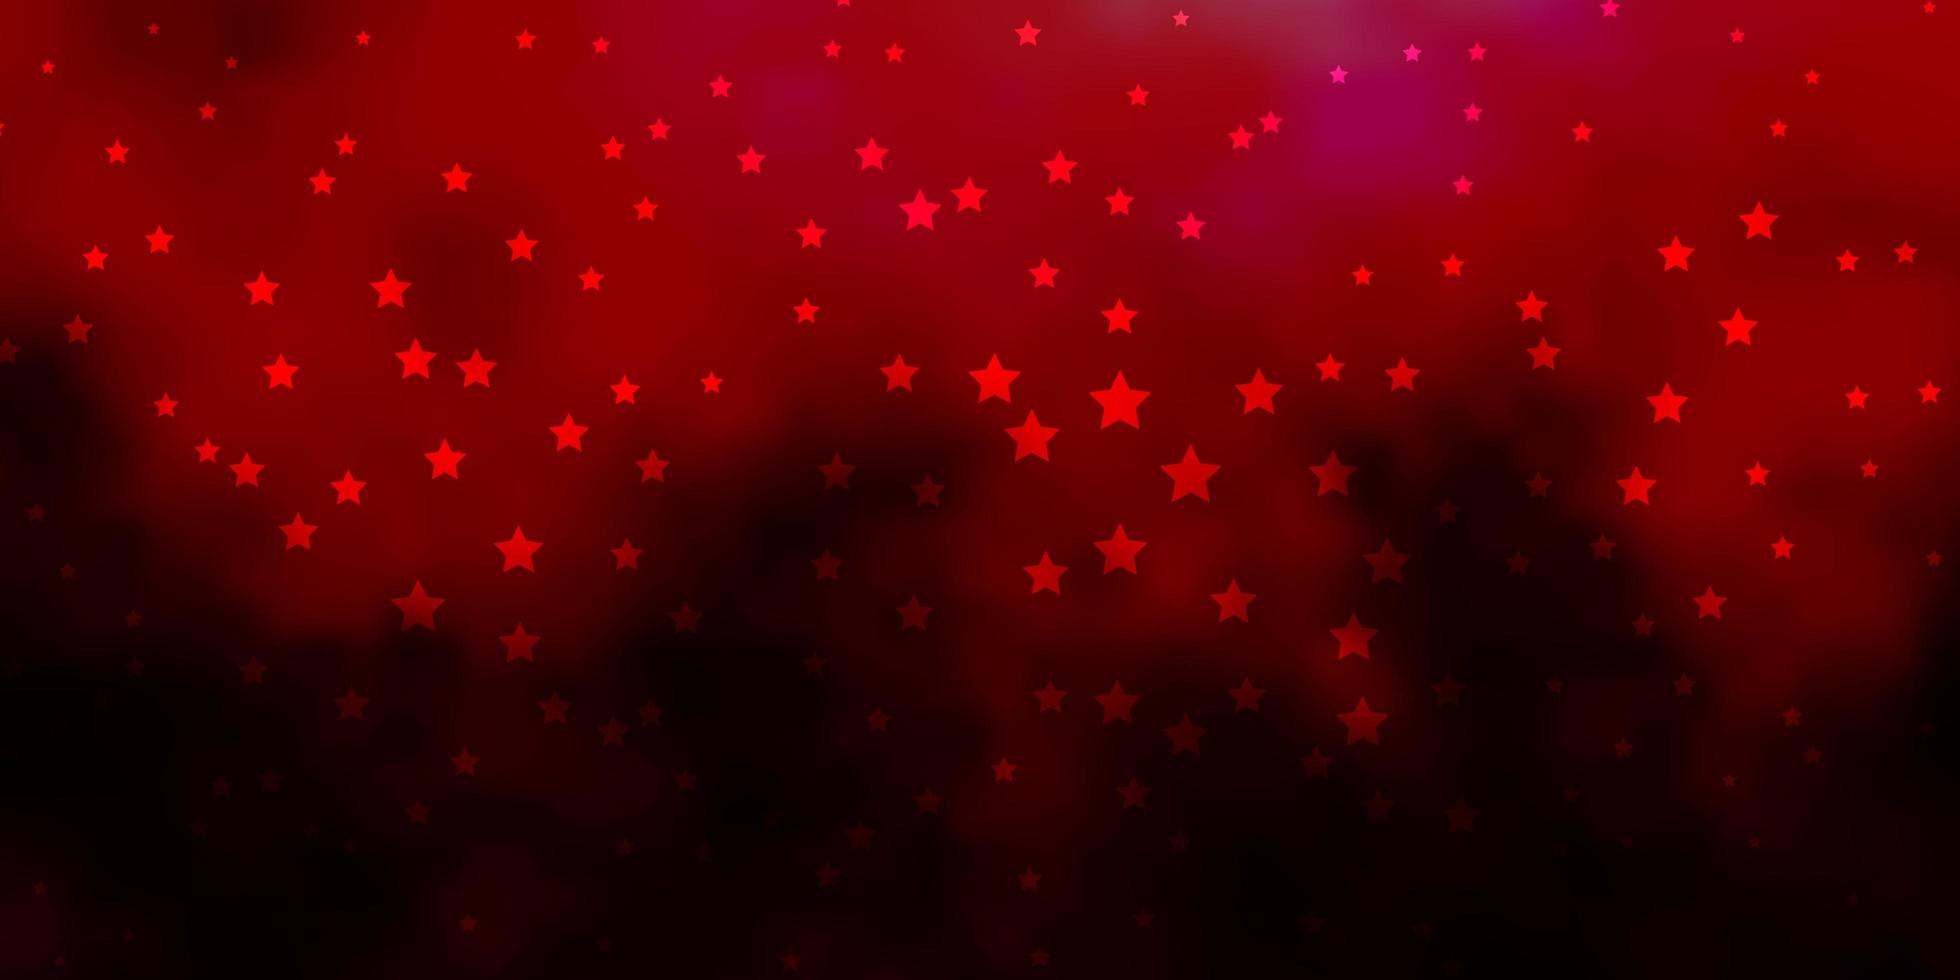 mörkrosa, rött vektormönster med abstrakta stjärnor. vektor